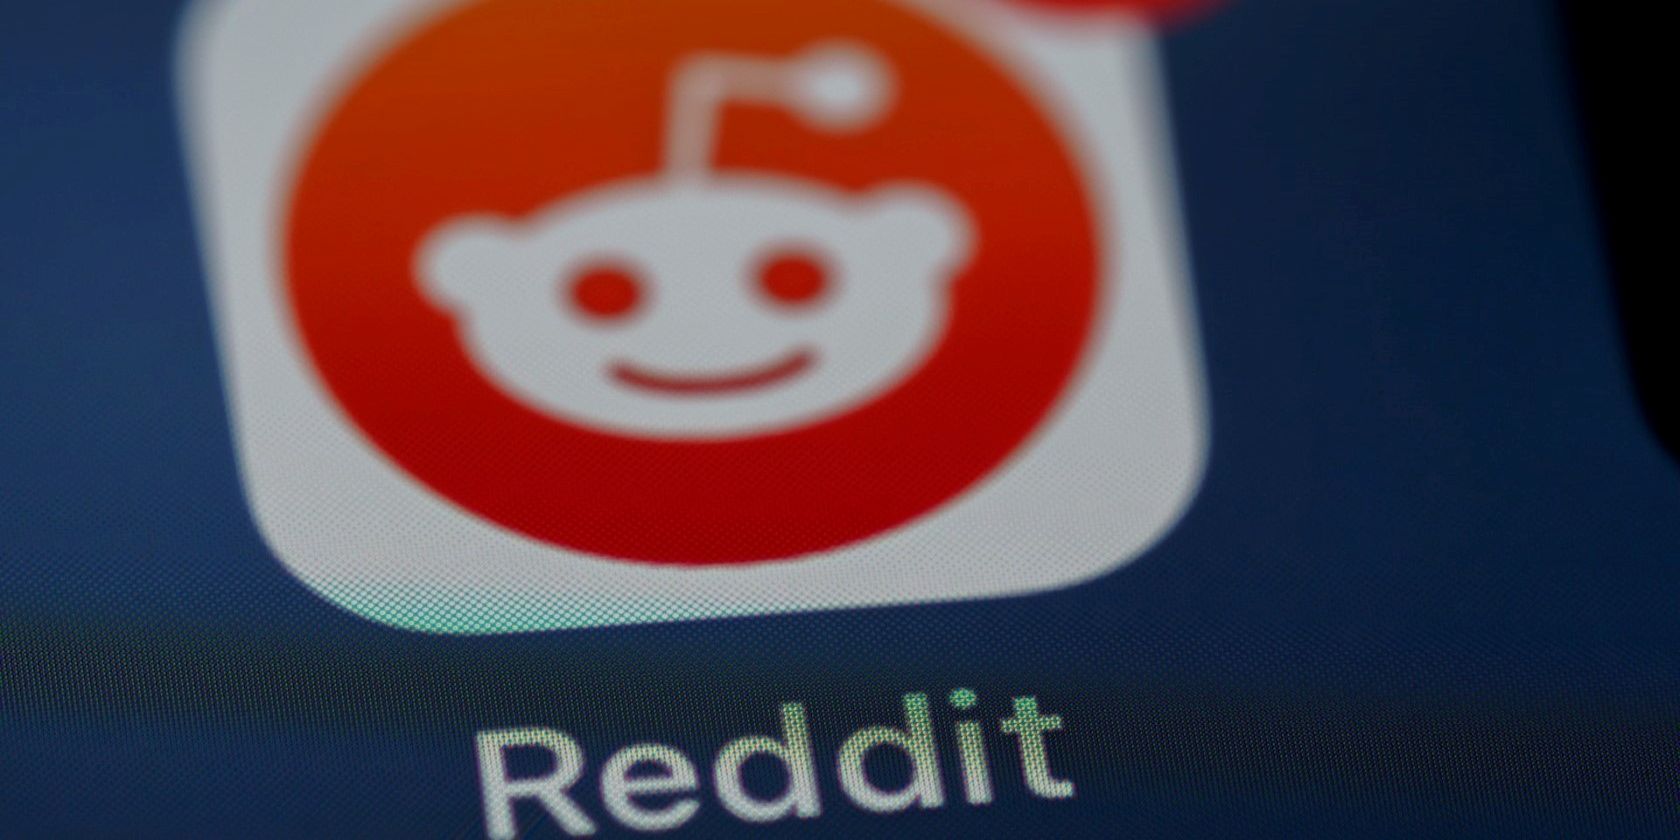 Reddit app logo on a smartphone